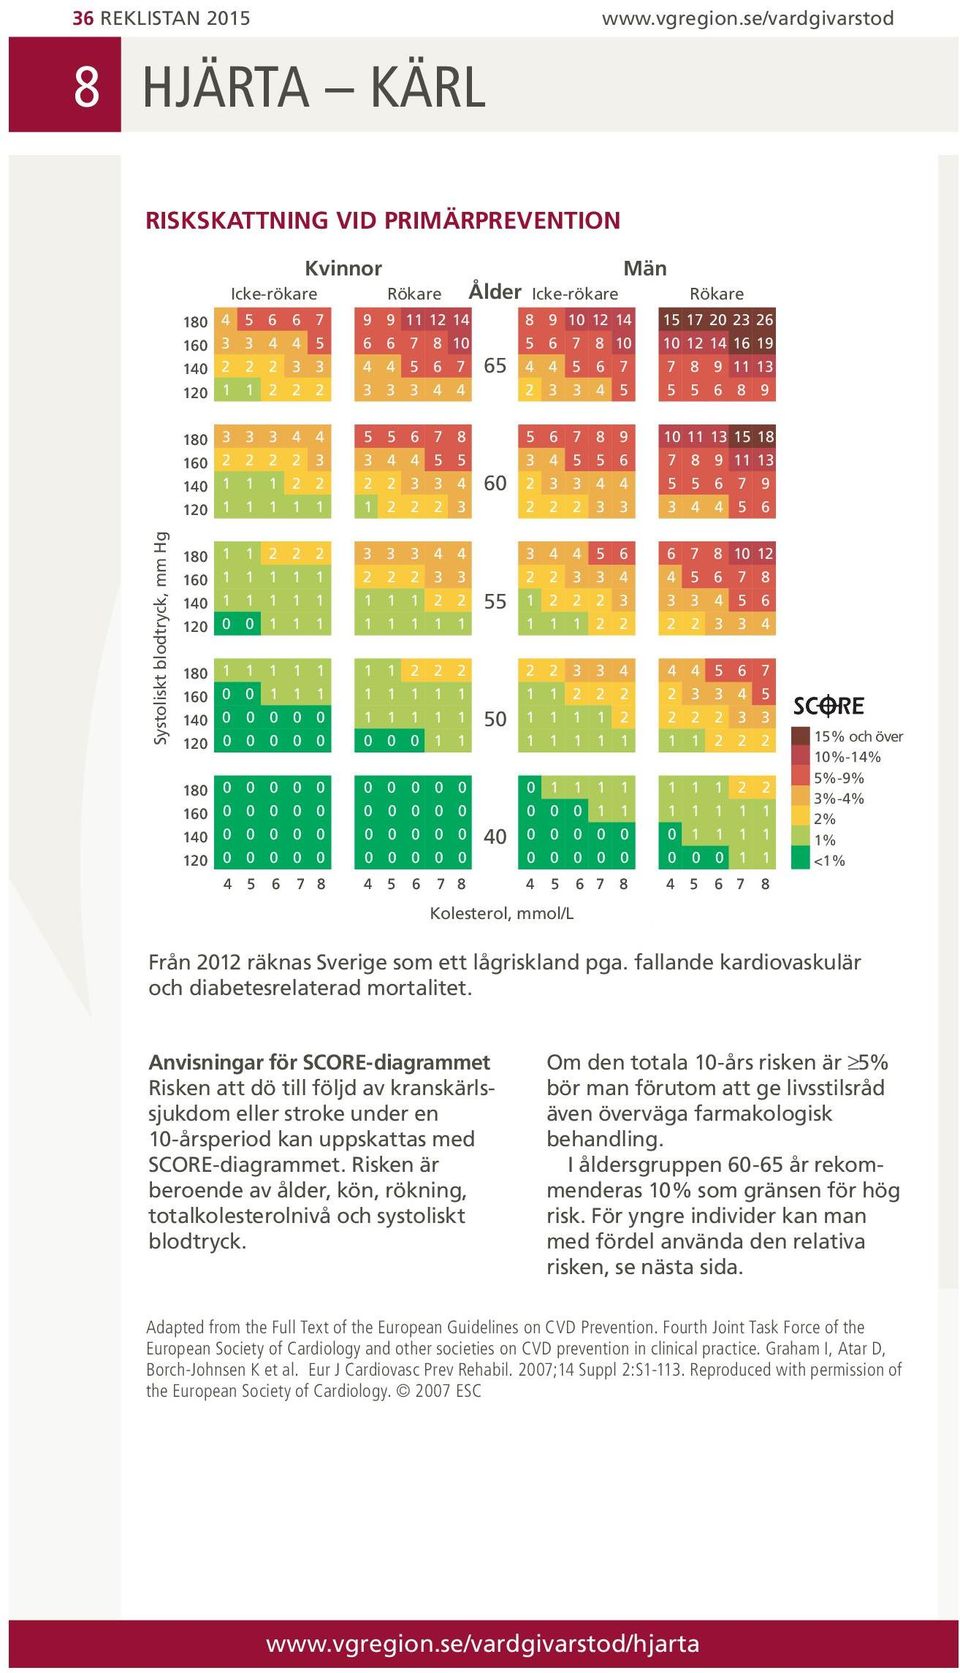 0 0 0 0 0 0 0 0 0 % och över 0%-% %-% %-% % % <% Från 0 räknas Sverige som ett lågriskland pga. fallande kardiovaskulär och diabetesrelaterad mortalitet.